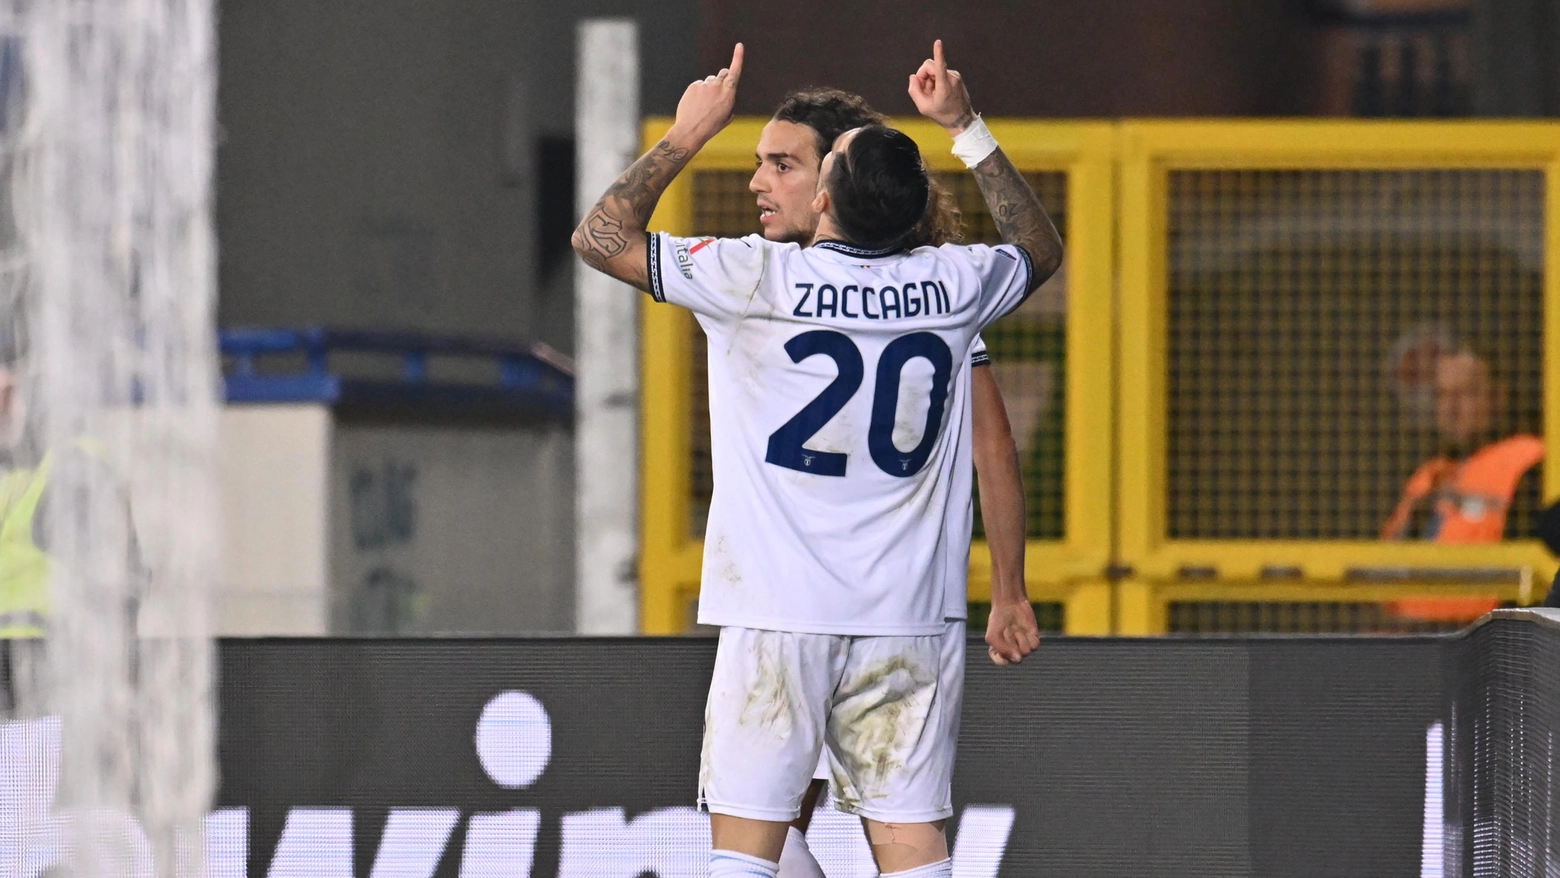 Mattia Zaccagni indica il cielo dopo il gol del 0-2 nella gara contro l'Empoli (foto Ansa)